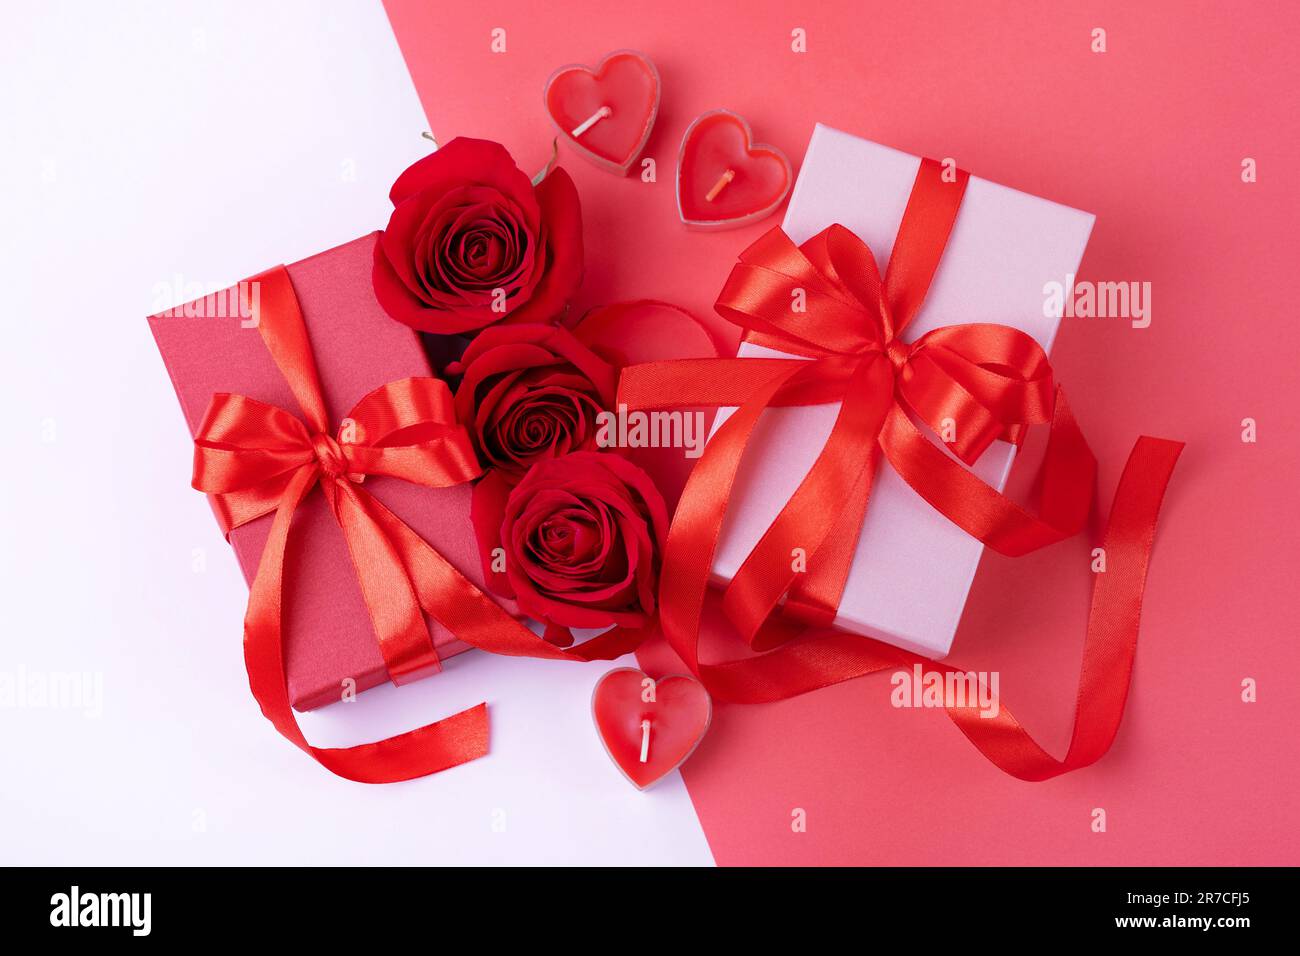 Carte de voeux pour la Saint-Valentin, la fête des mères et l'anniversaire. Roses rouges, boîtes-cadeaux avec un noeud en ruban de satin rouge sur fond rose. Vue de dessus, plate Banque D'Images